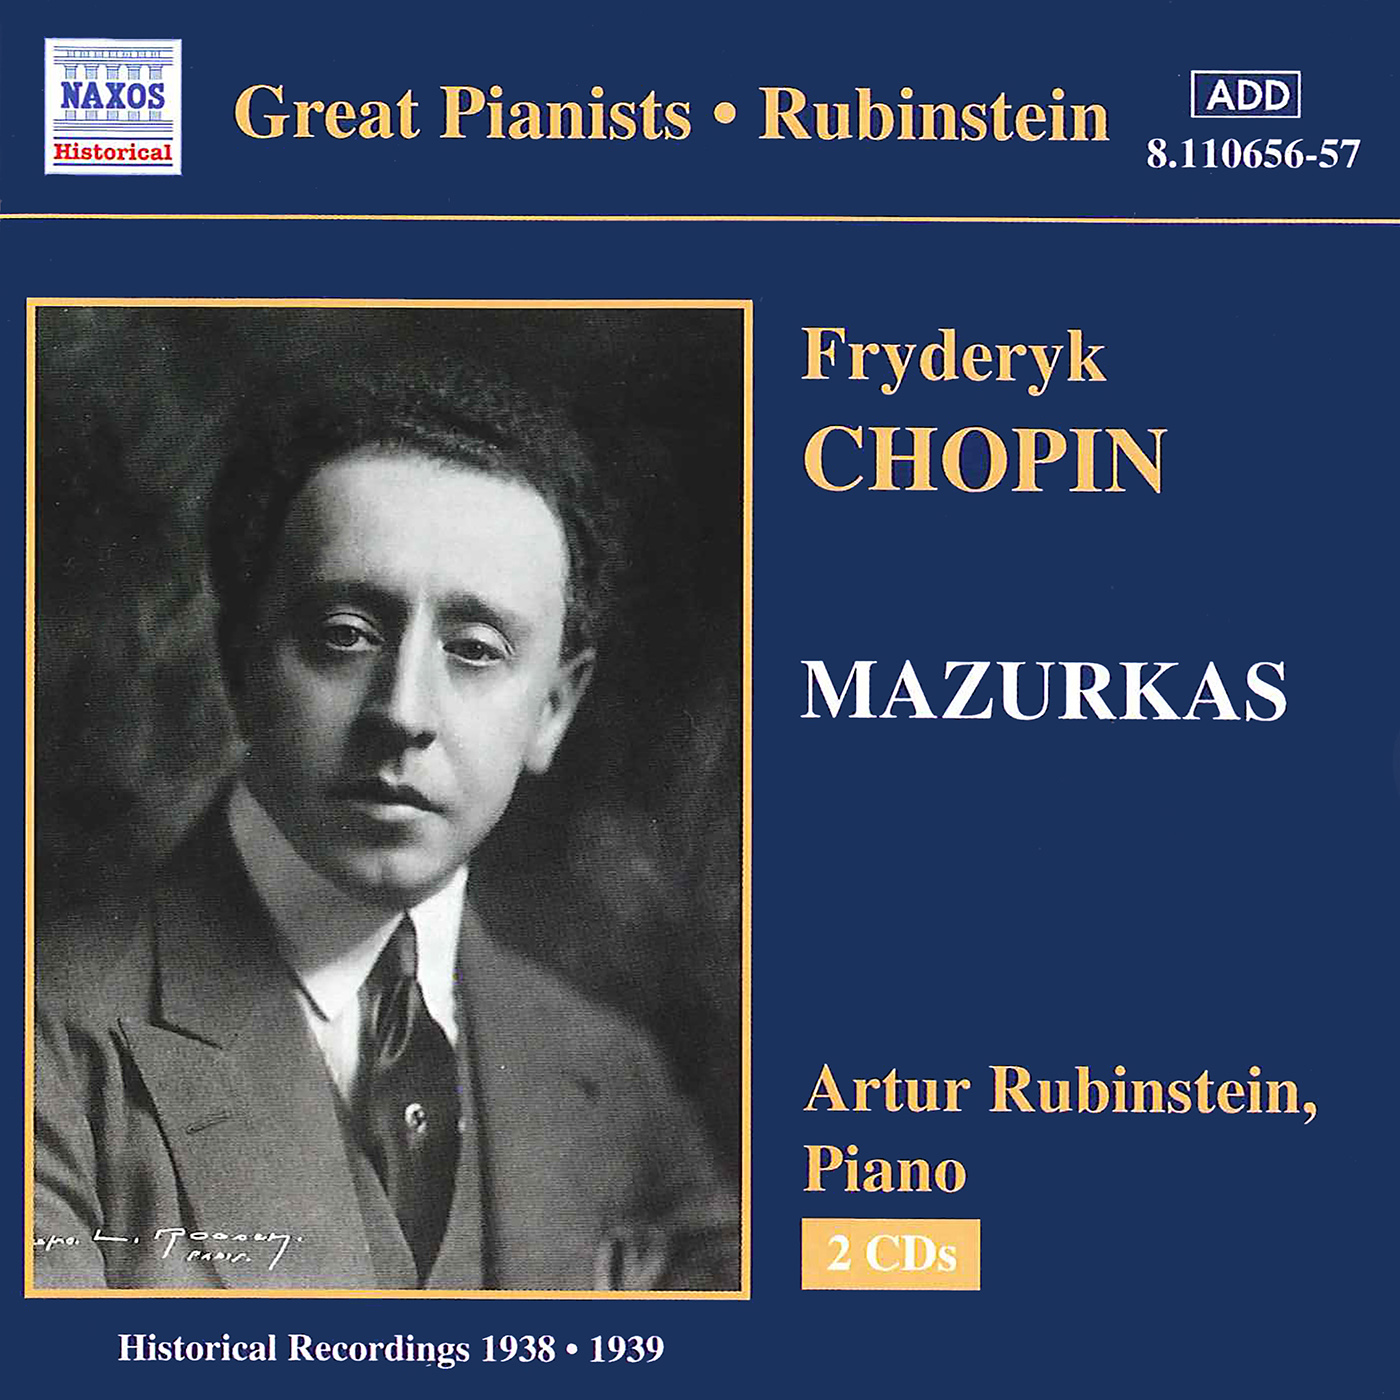 Mazurka No. 39 in B Major, Op. 63, No. 1